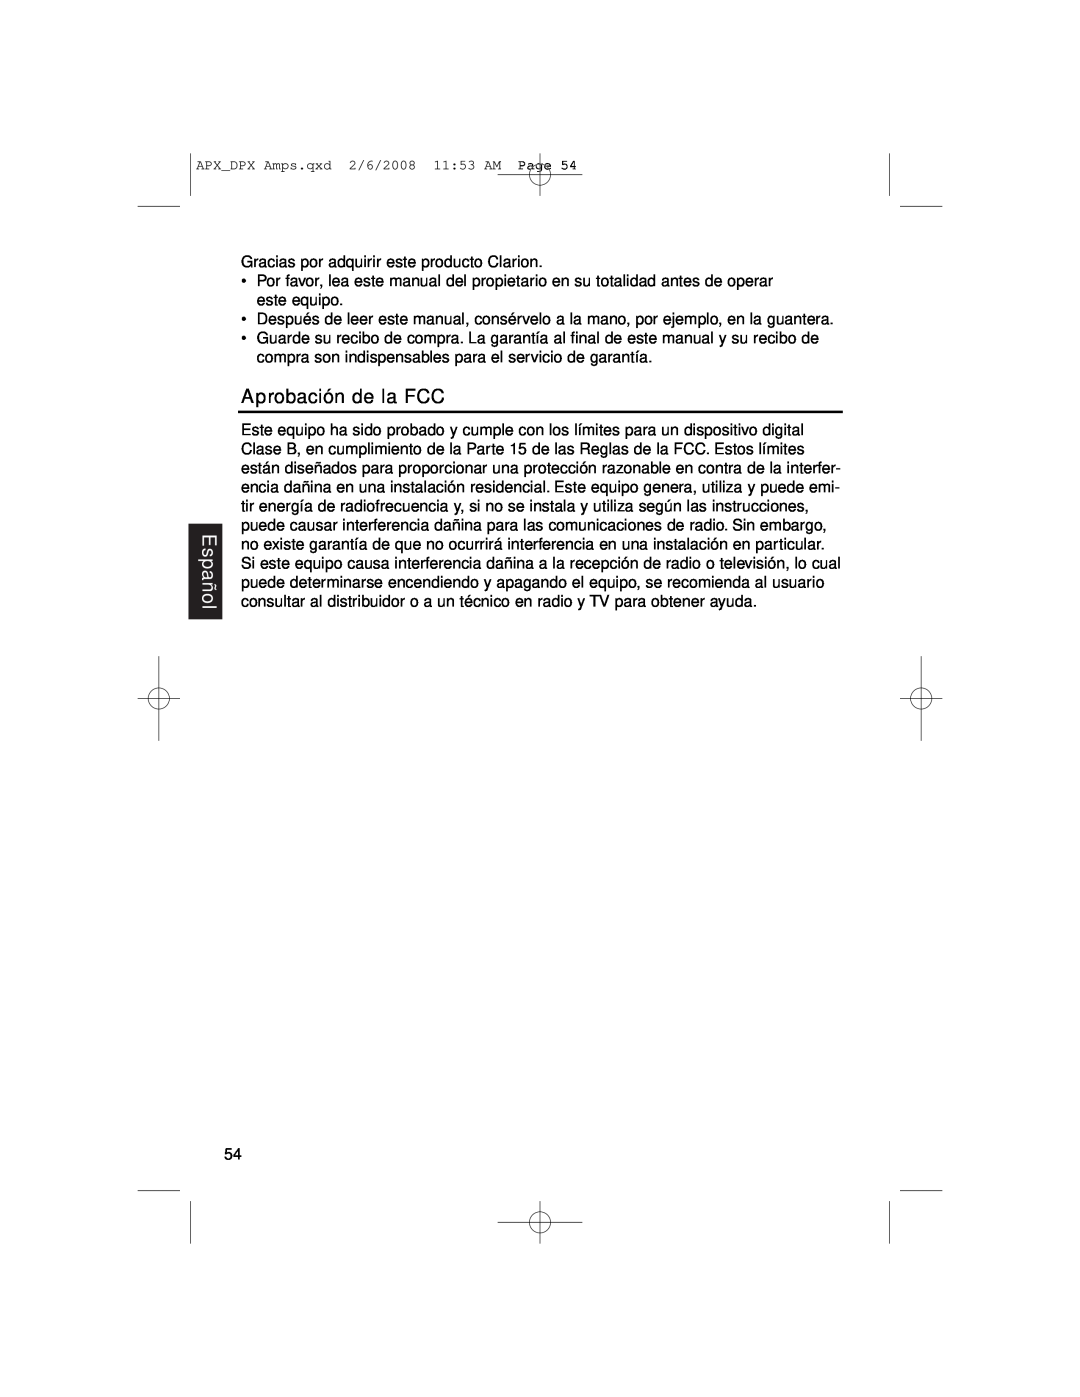 Clarion DPX11551, APX2181, APX4361 owner manual Español, Aprobación de la FCC 